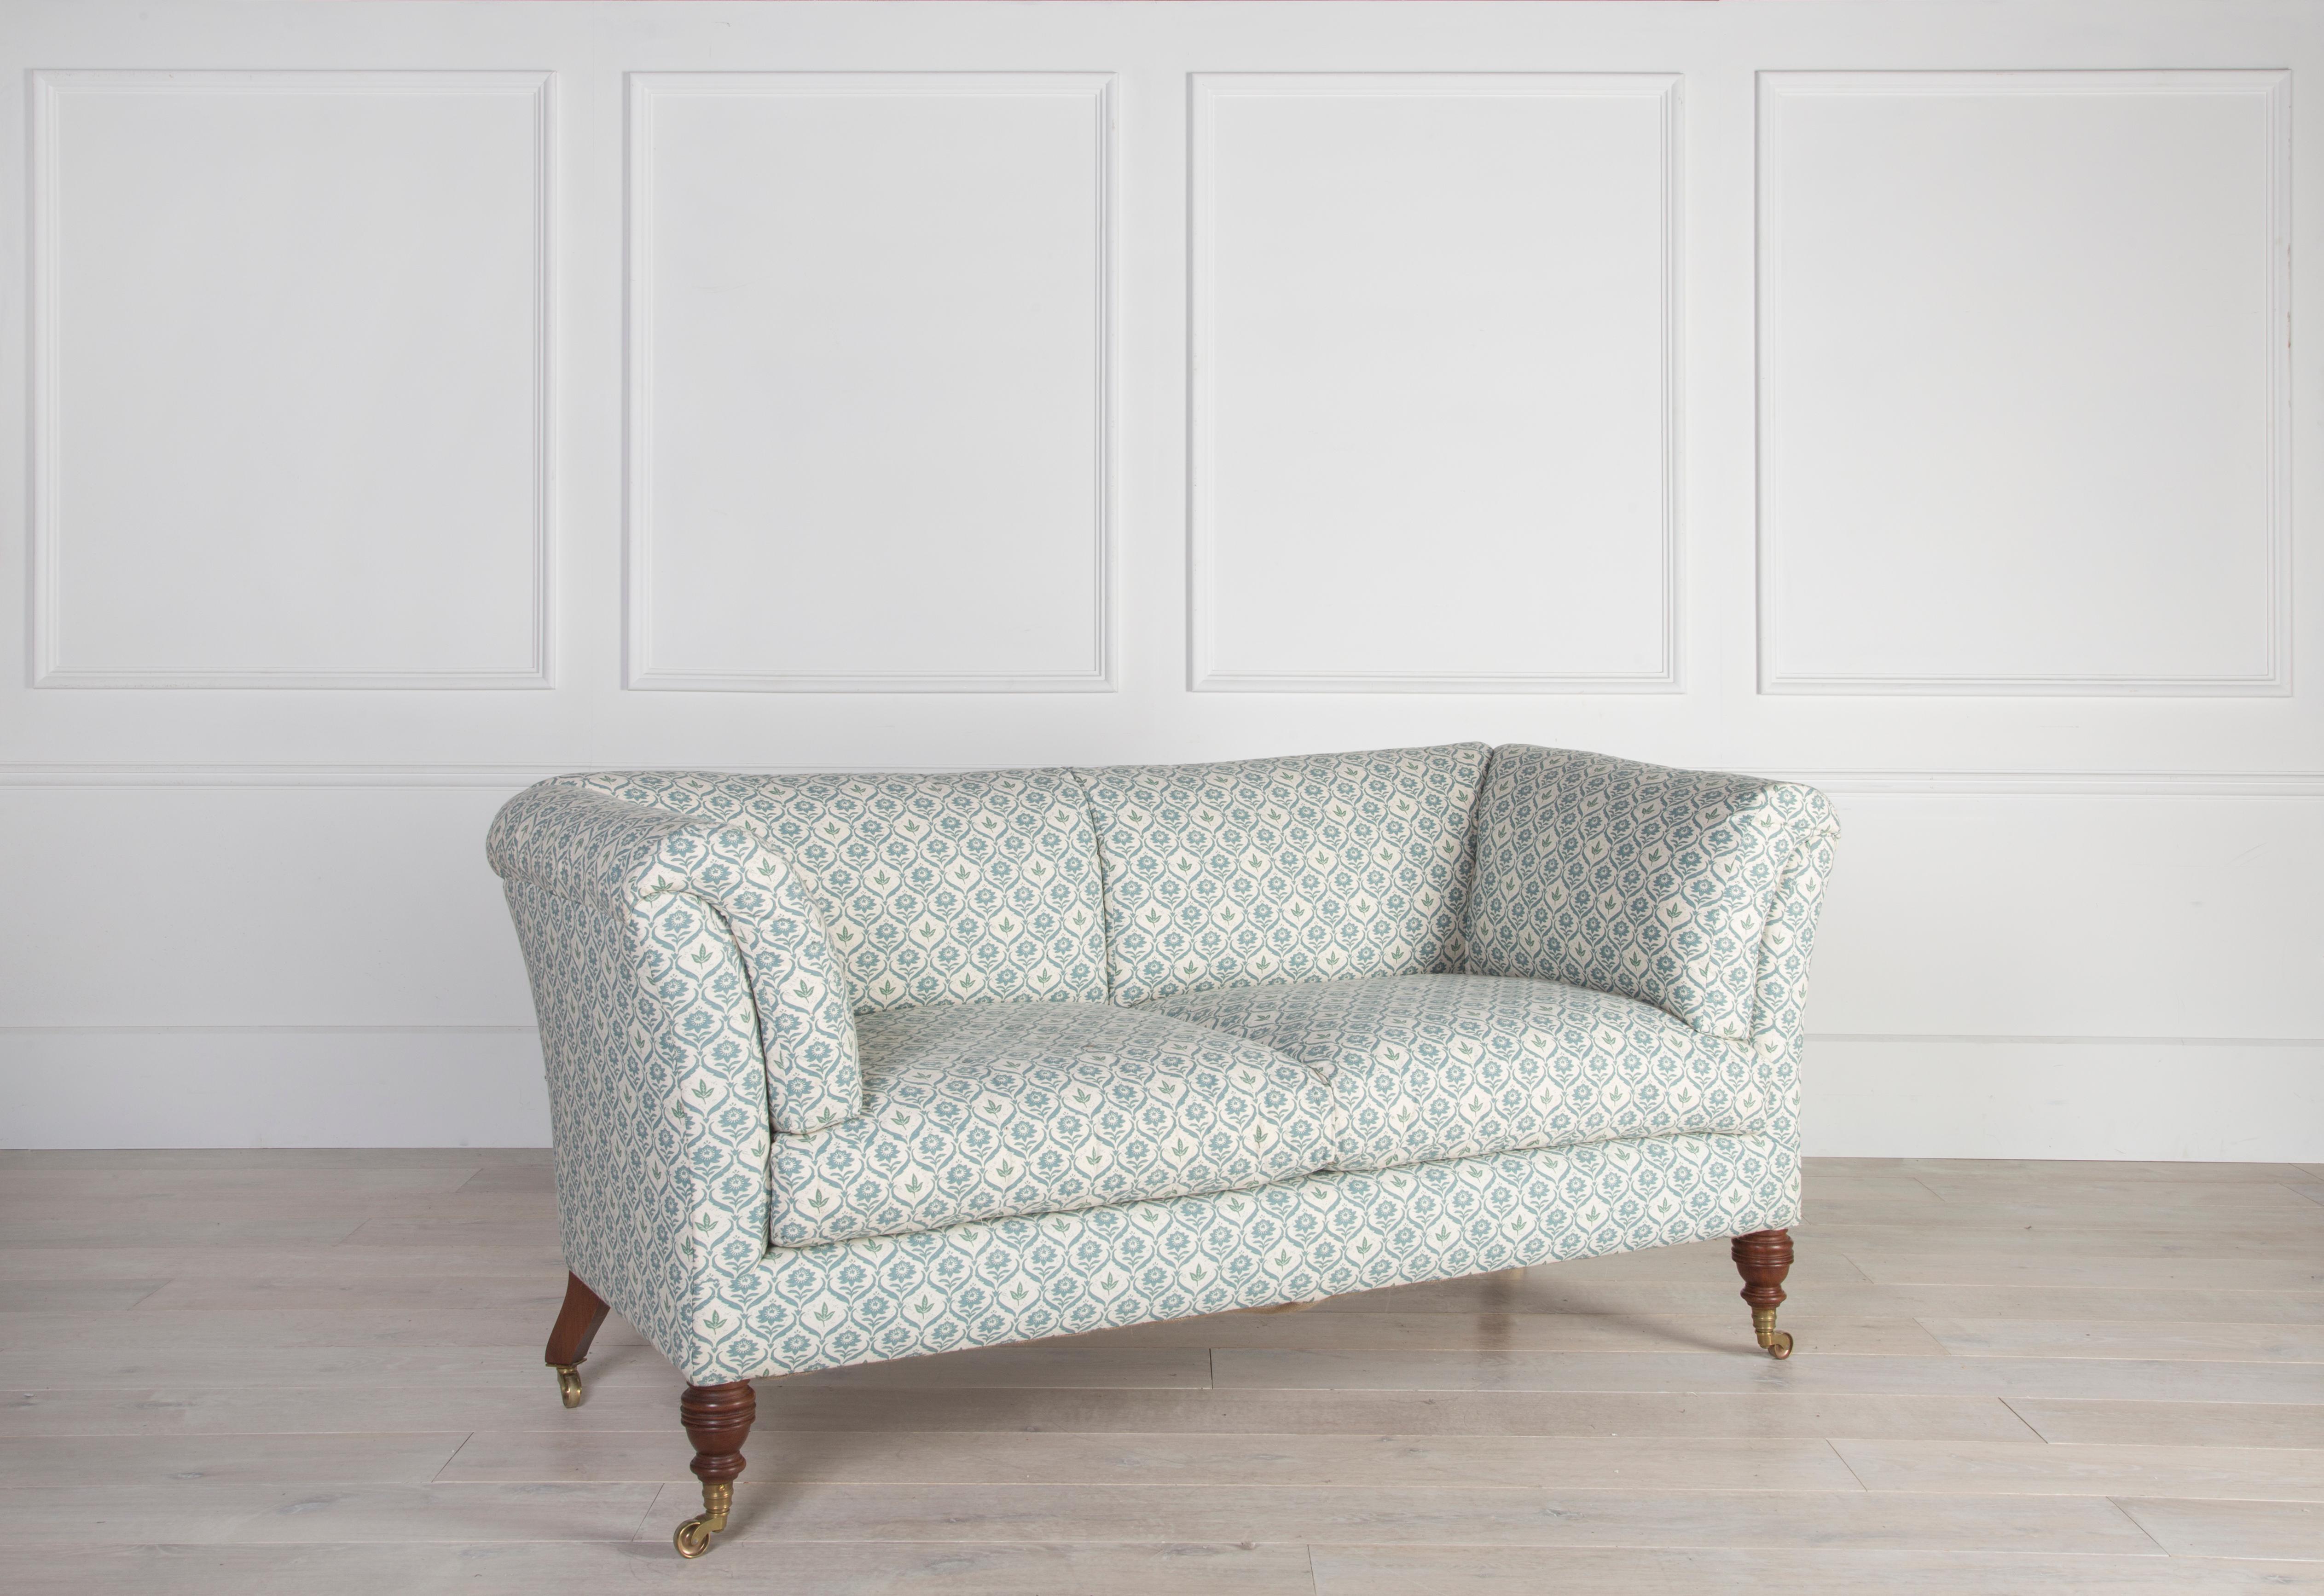 Das Belmont-Sofa basiert auf dem elegantesten Modell von Howard & Son, dem Baring. Mit einem hohen Daunenanteil in Sitz-, Rücken- und Armkissen ist dieses Sofa die perfekte Mischung aus zeitlosem Design und Komfort.

Wir bauen unseren Belmont aus